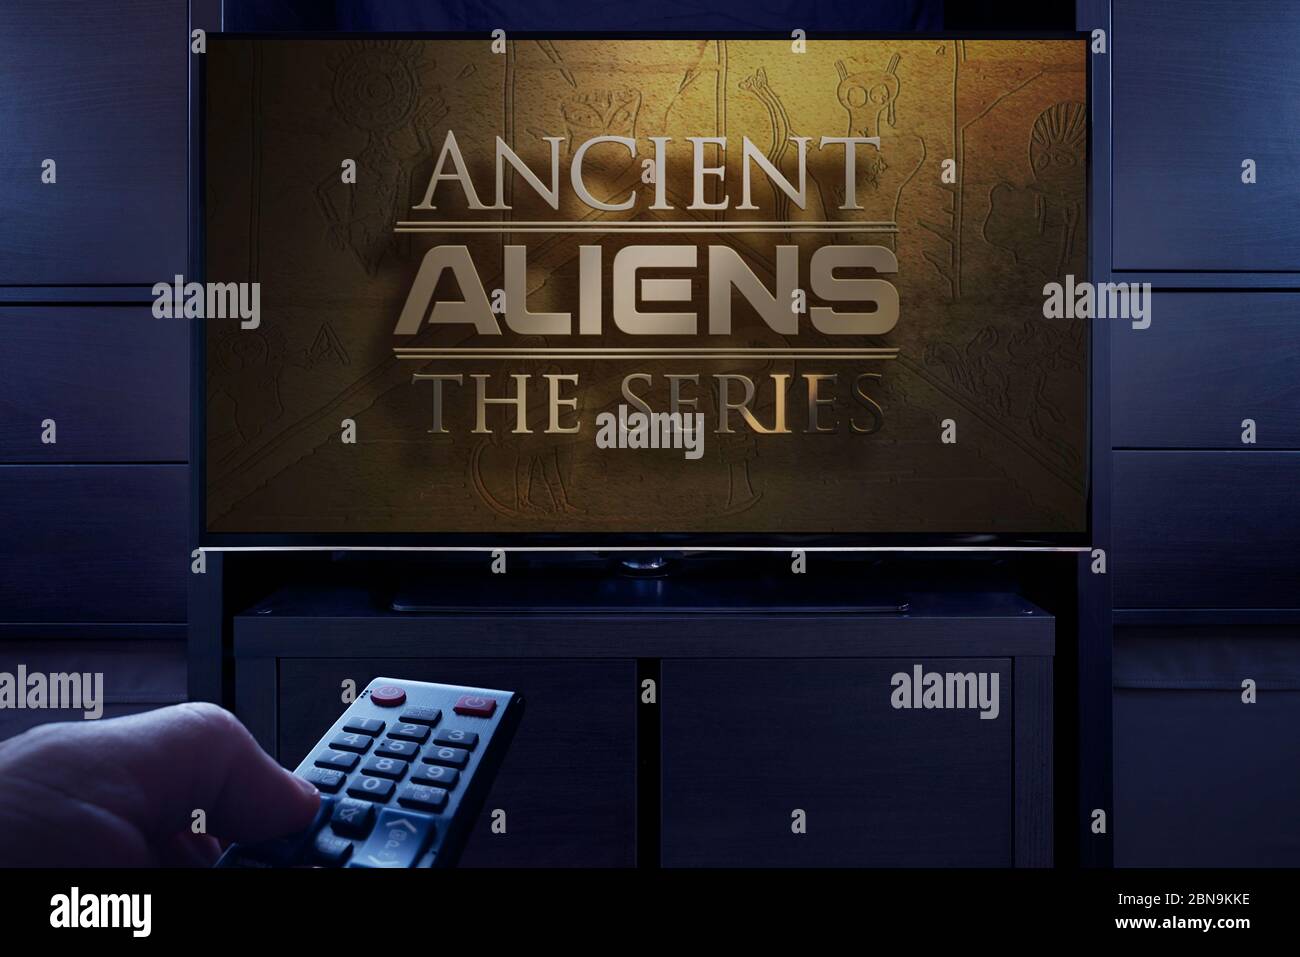 Ein Mann zeigt mit einer Fernbedienung auf den Fernseher, auf dem der Titelbildschirm von Ancient Aliens angezeigt wird (nur redaktionelle Verwendung). Stockfoto